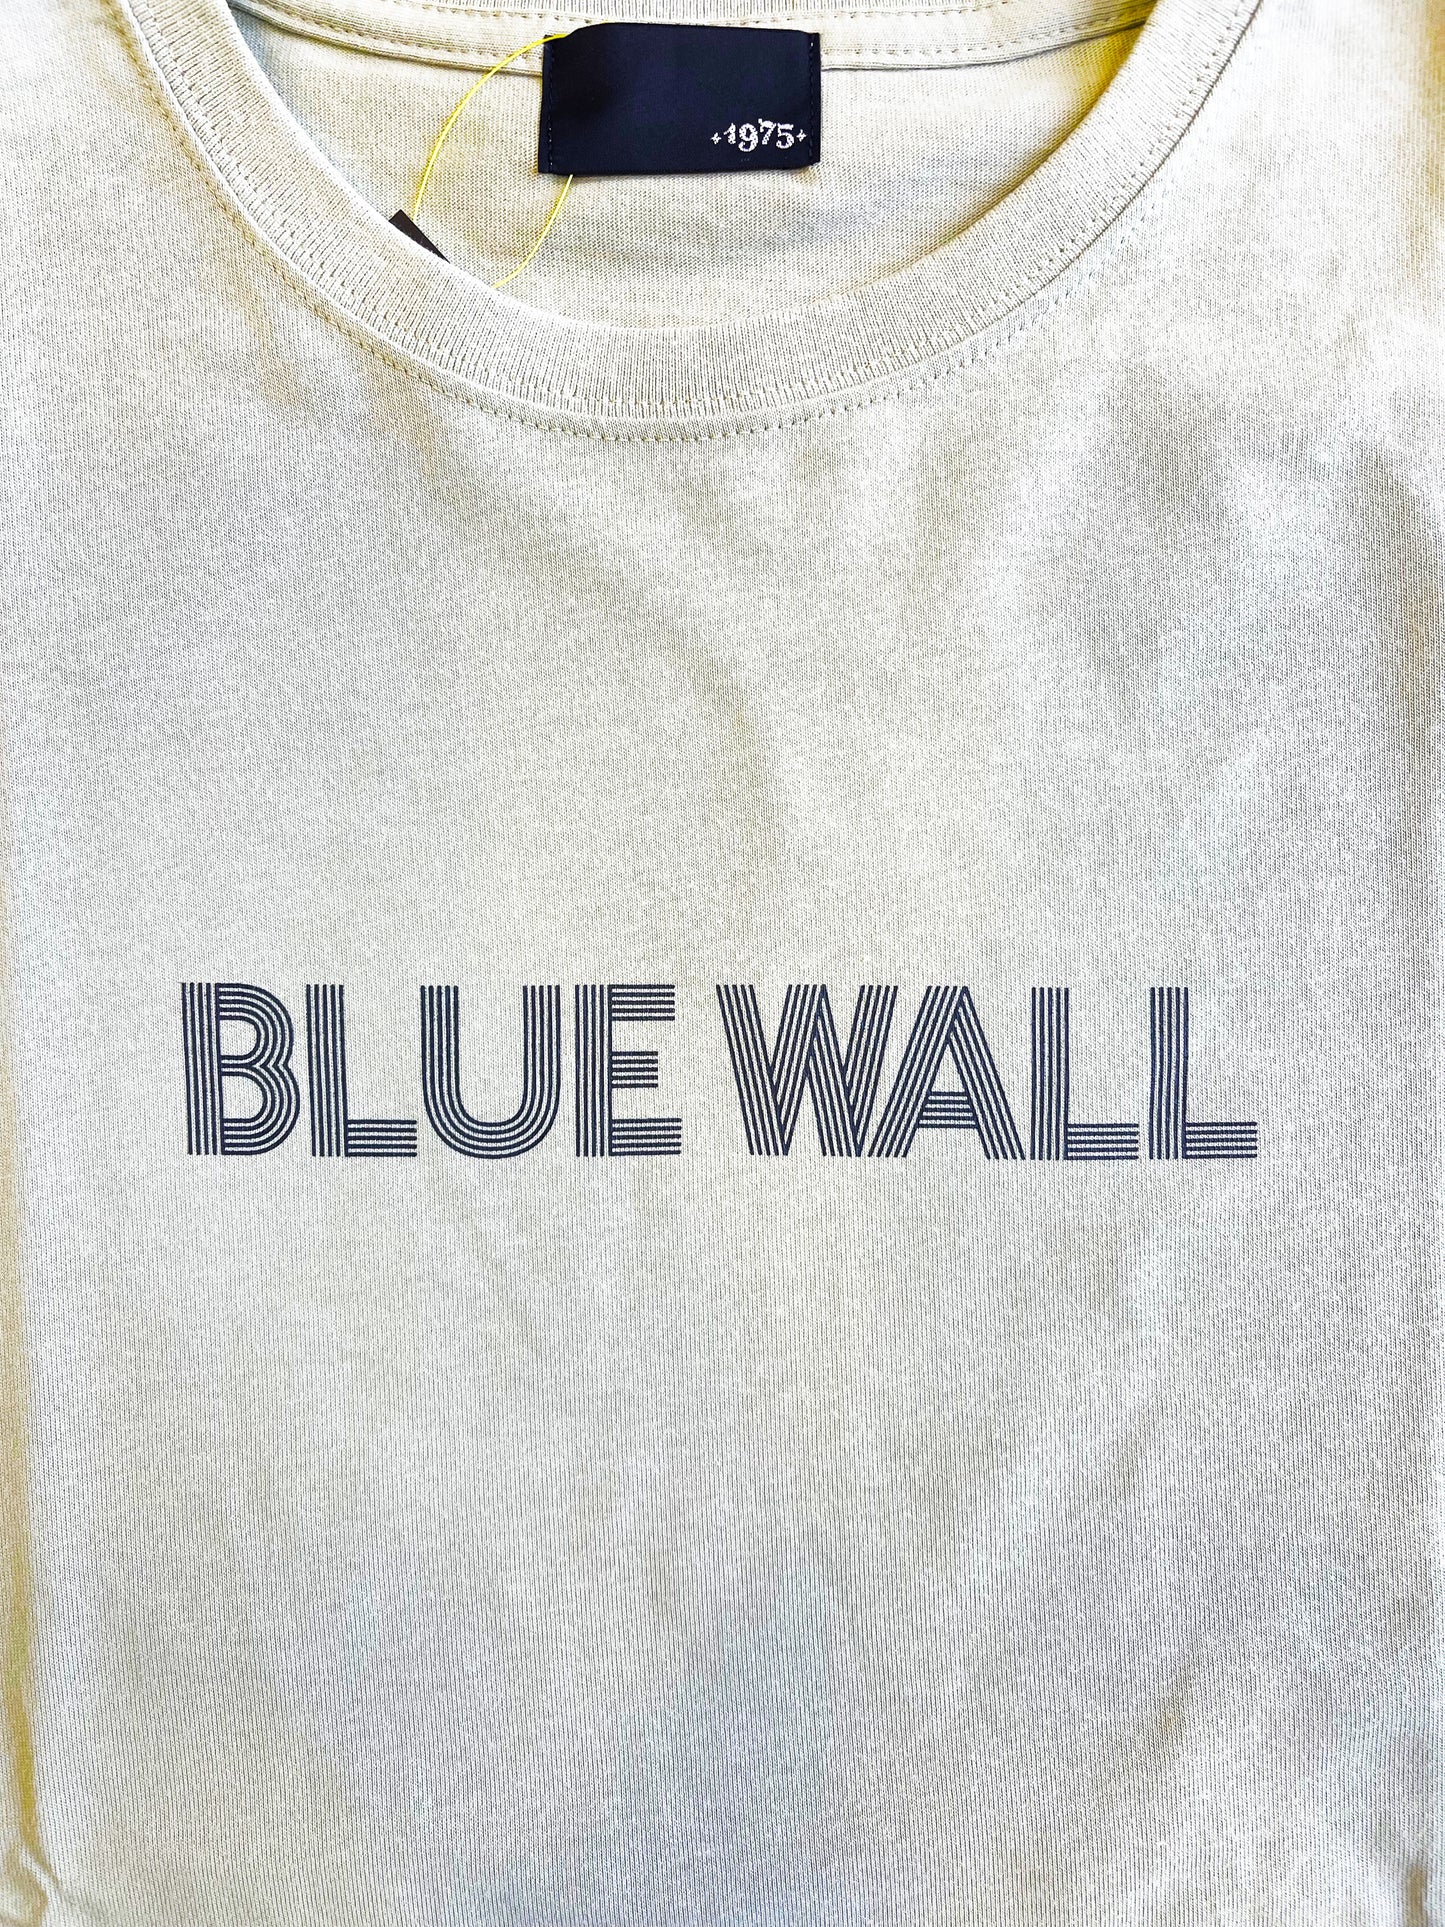 BLUE WALL TEE